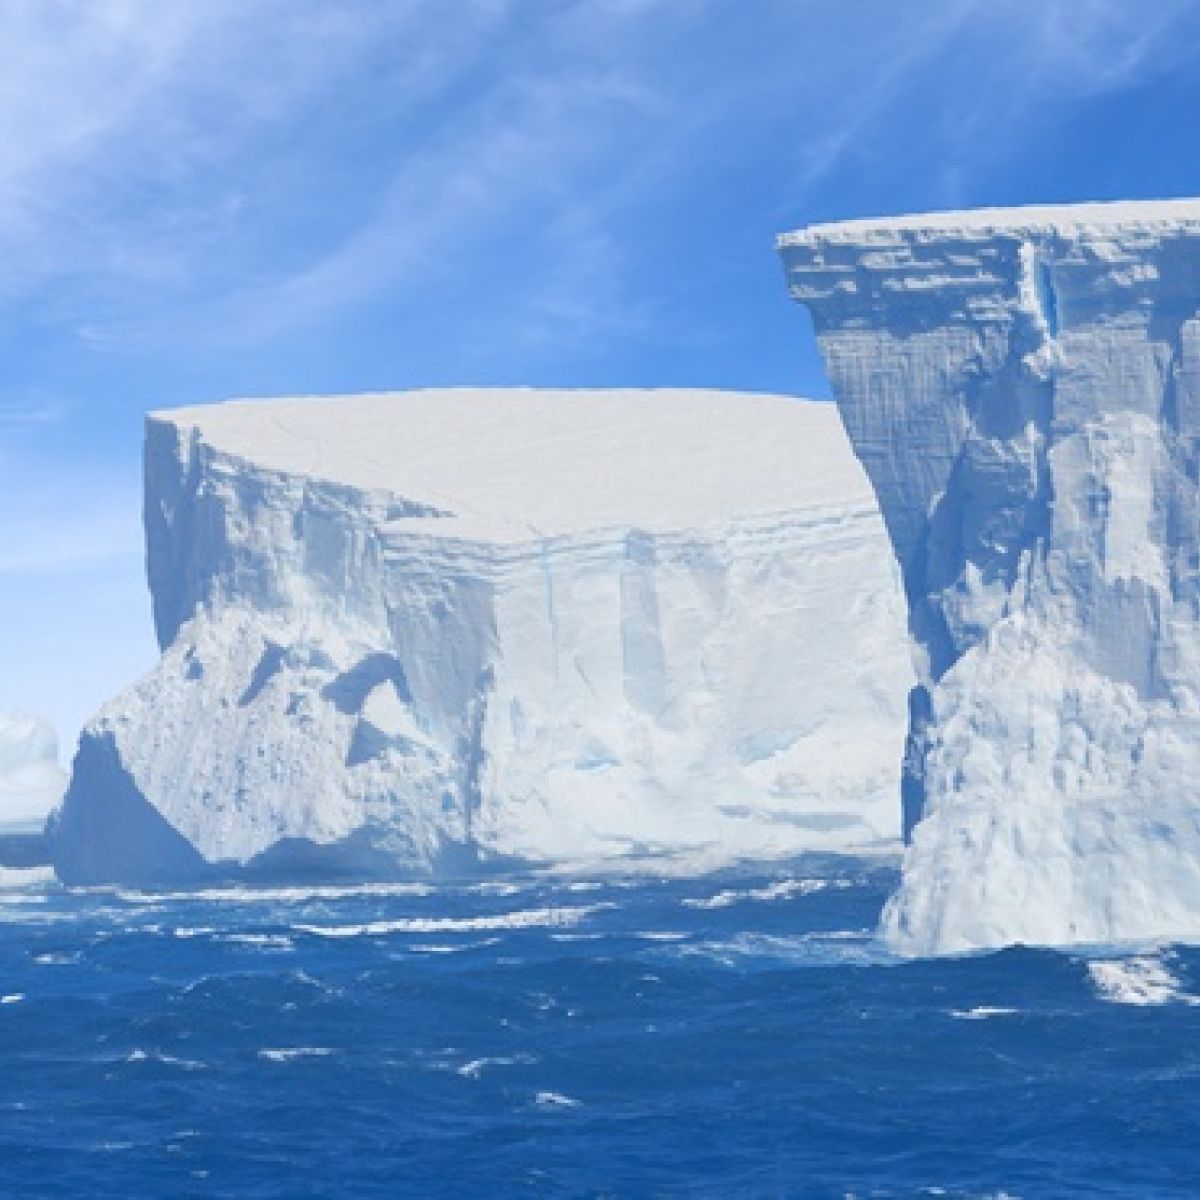 سقوط جرف جليدي ضخم في القارة القطبية الجنوبية قد يكون مؤشرًا على التغير المناخي